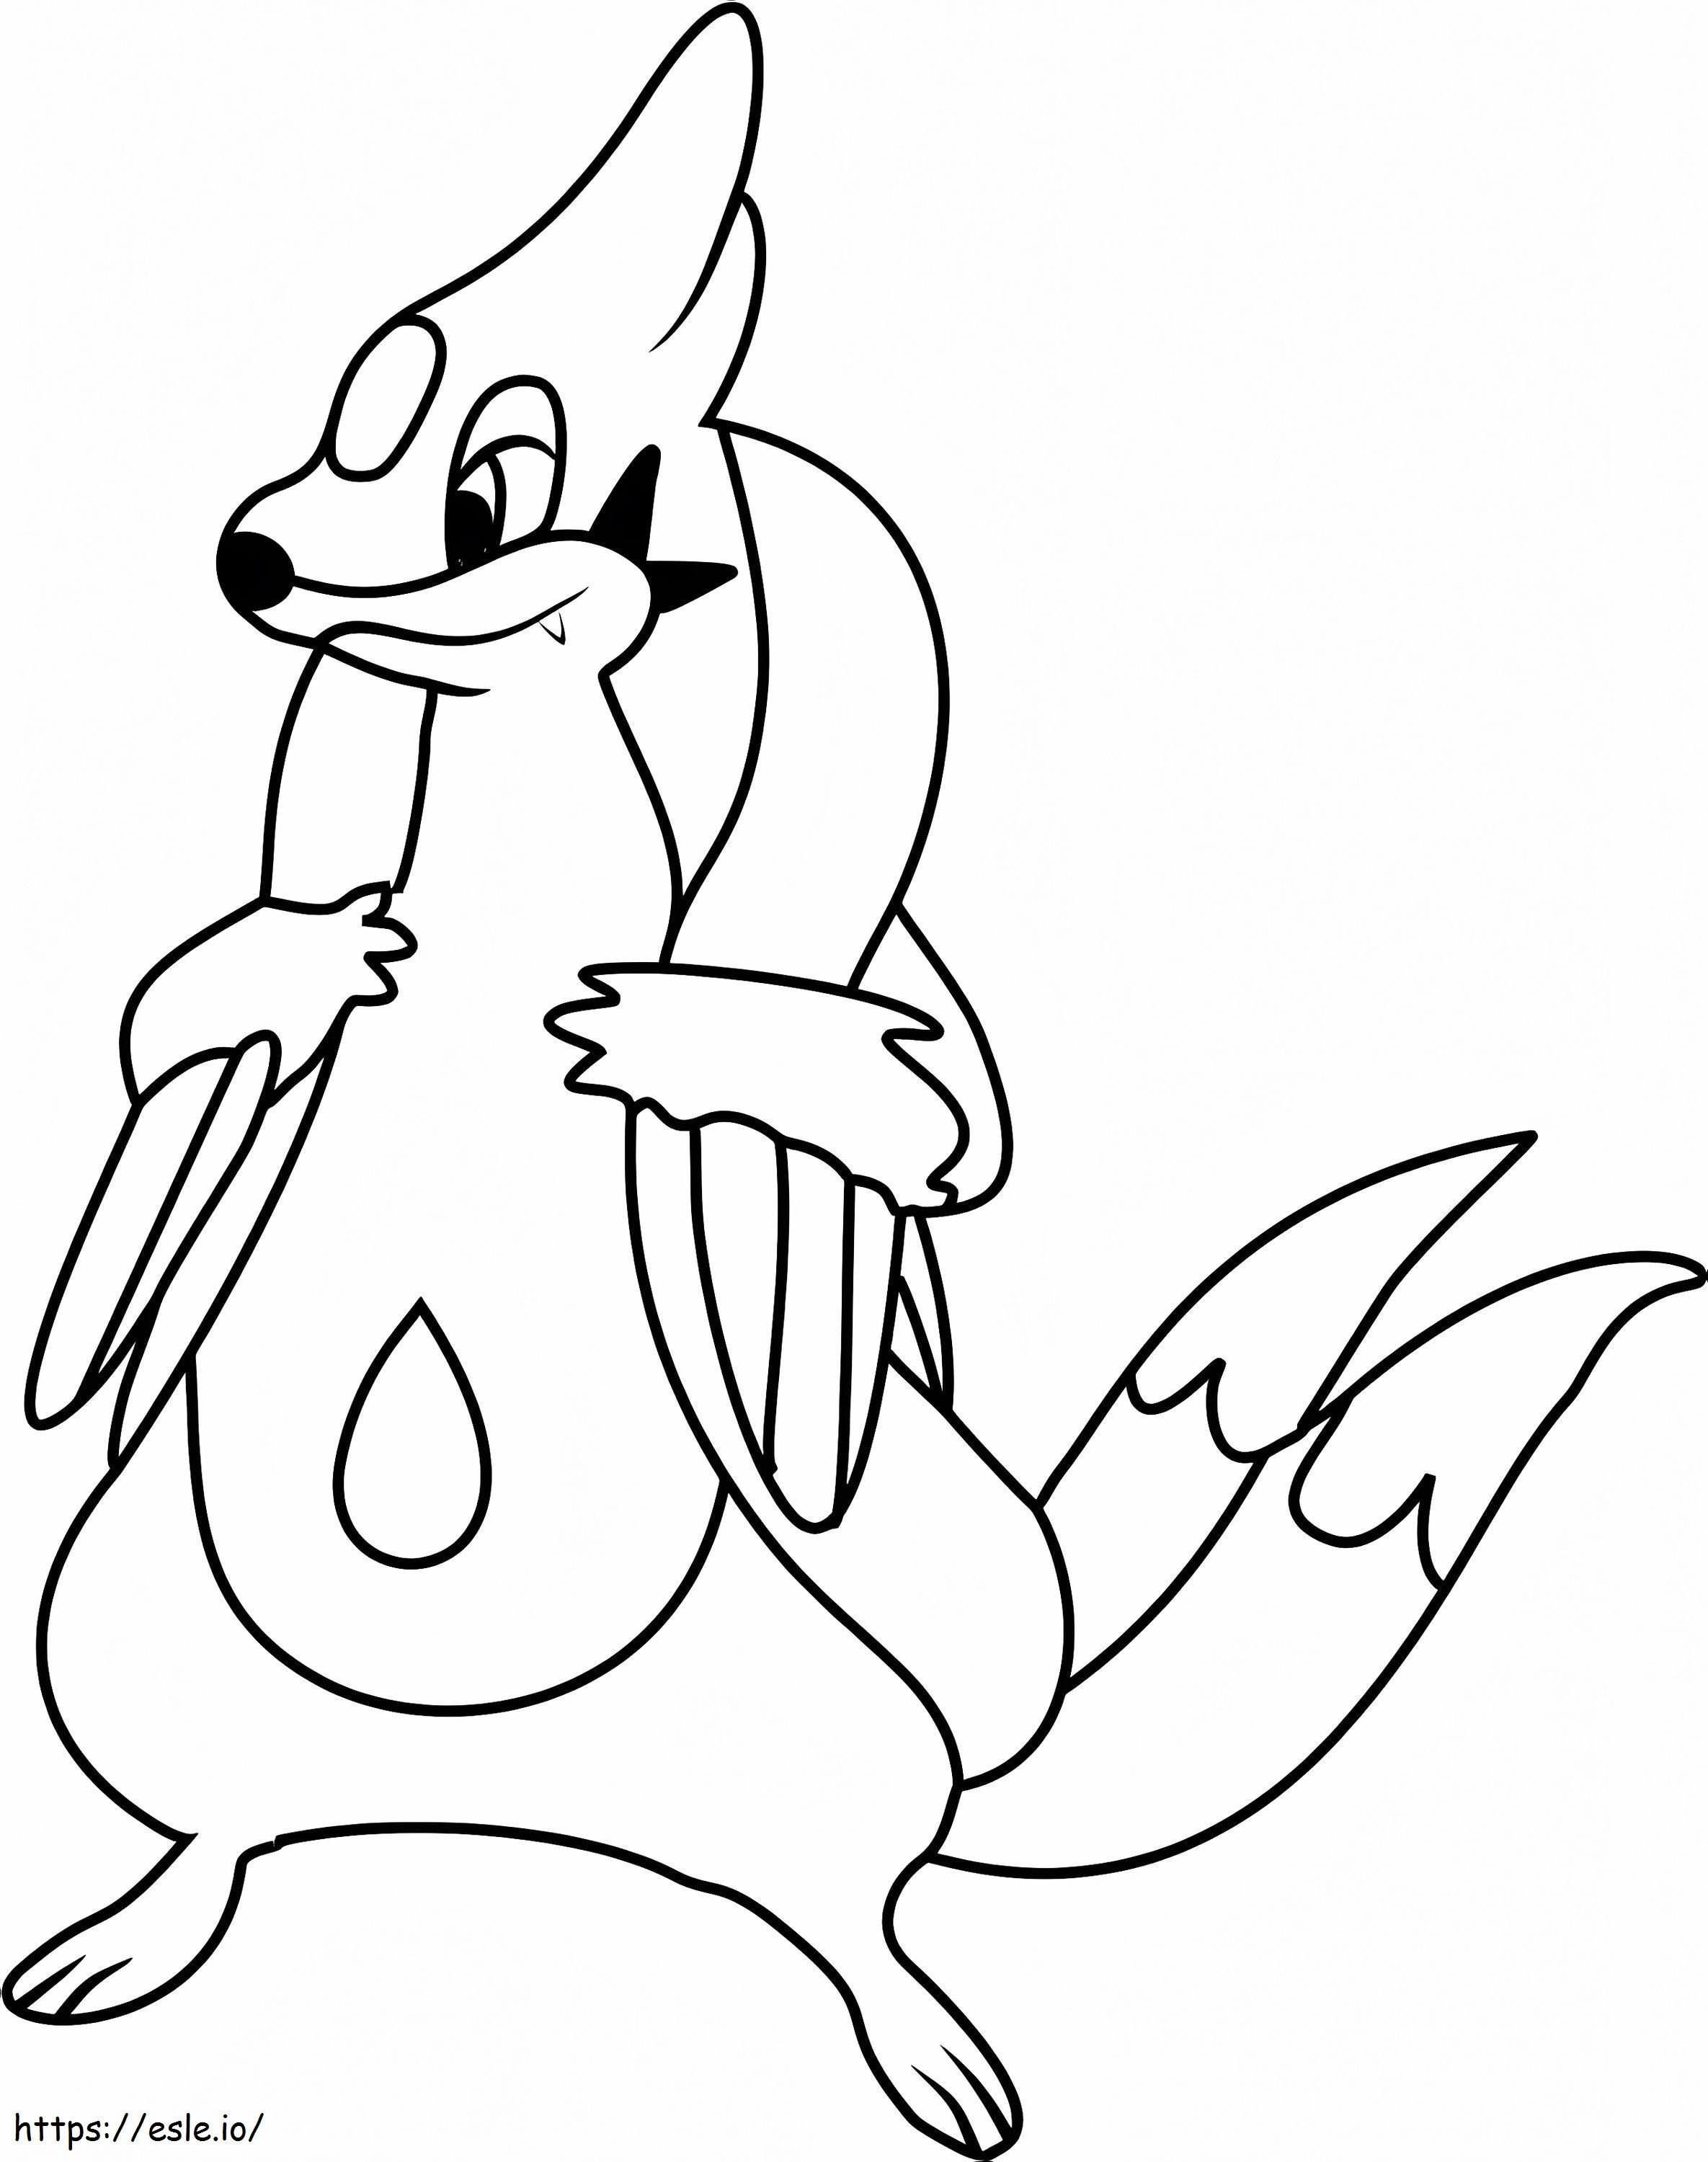 Coloriage Pokémon Floatzel Gen 4 à imprimer dessin